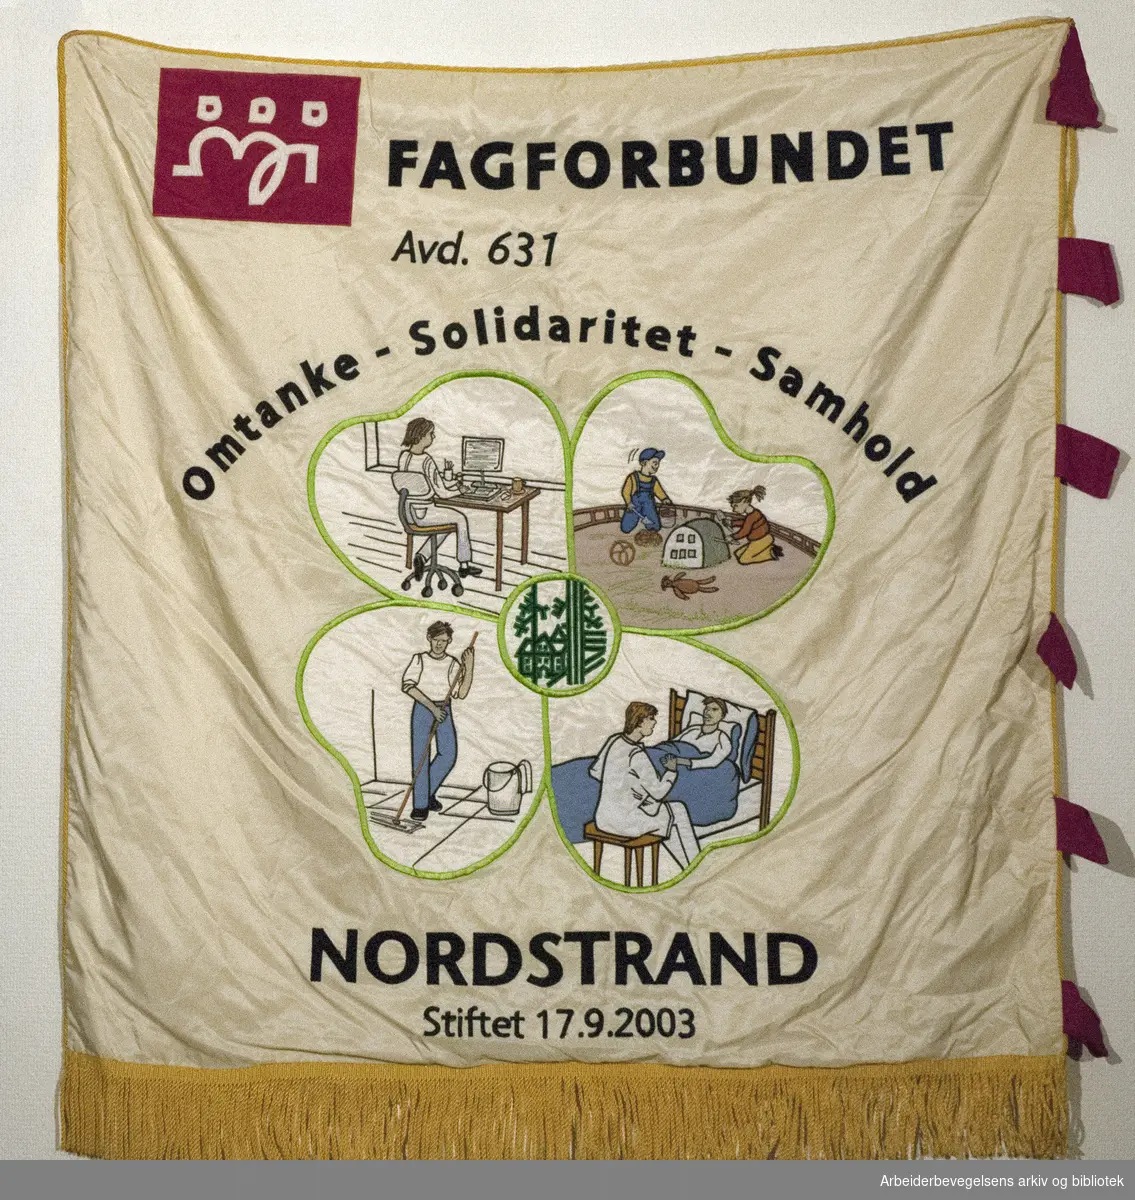 Fagforbundet Avd. 631. Nordstrand.Stiftet 17. 9. 2003..Bakside..Fanetekst: .Fagforbundet Avd. 631.Omtanke - Solidaritet - Samhold.Nordstrand.Stiftet 17. 9. 2003.